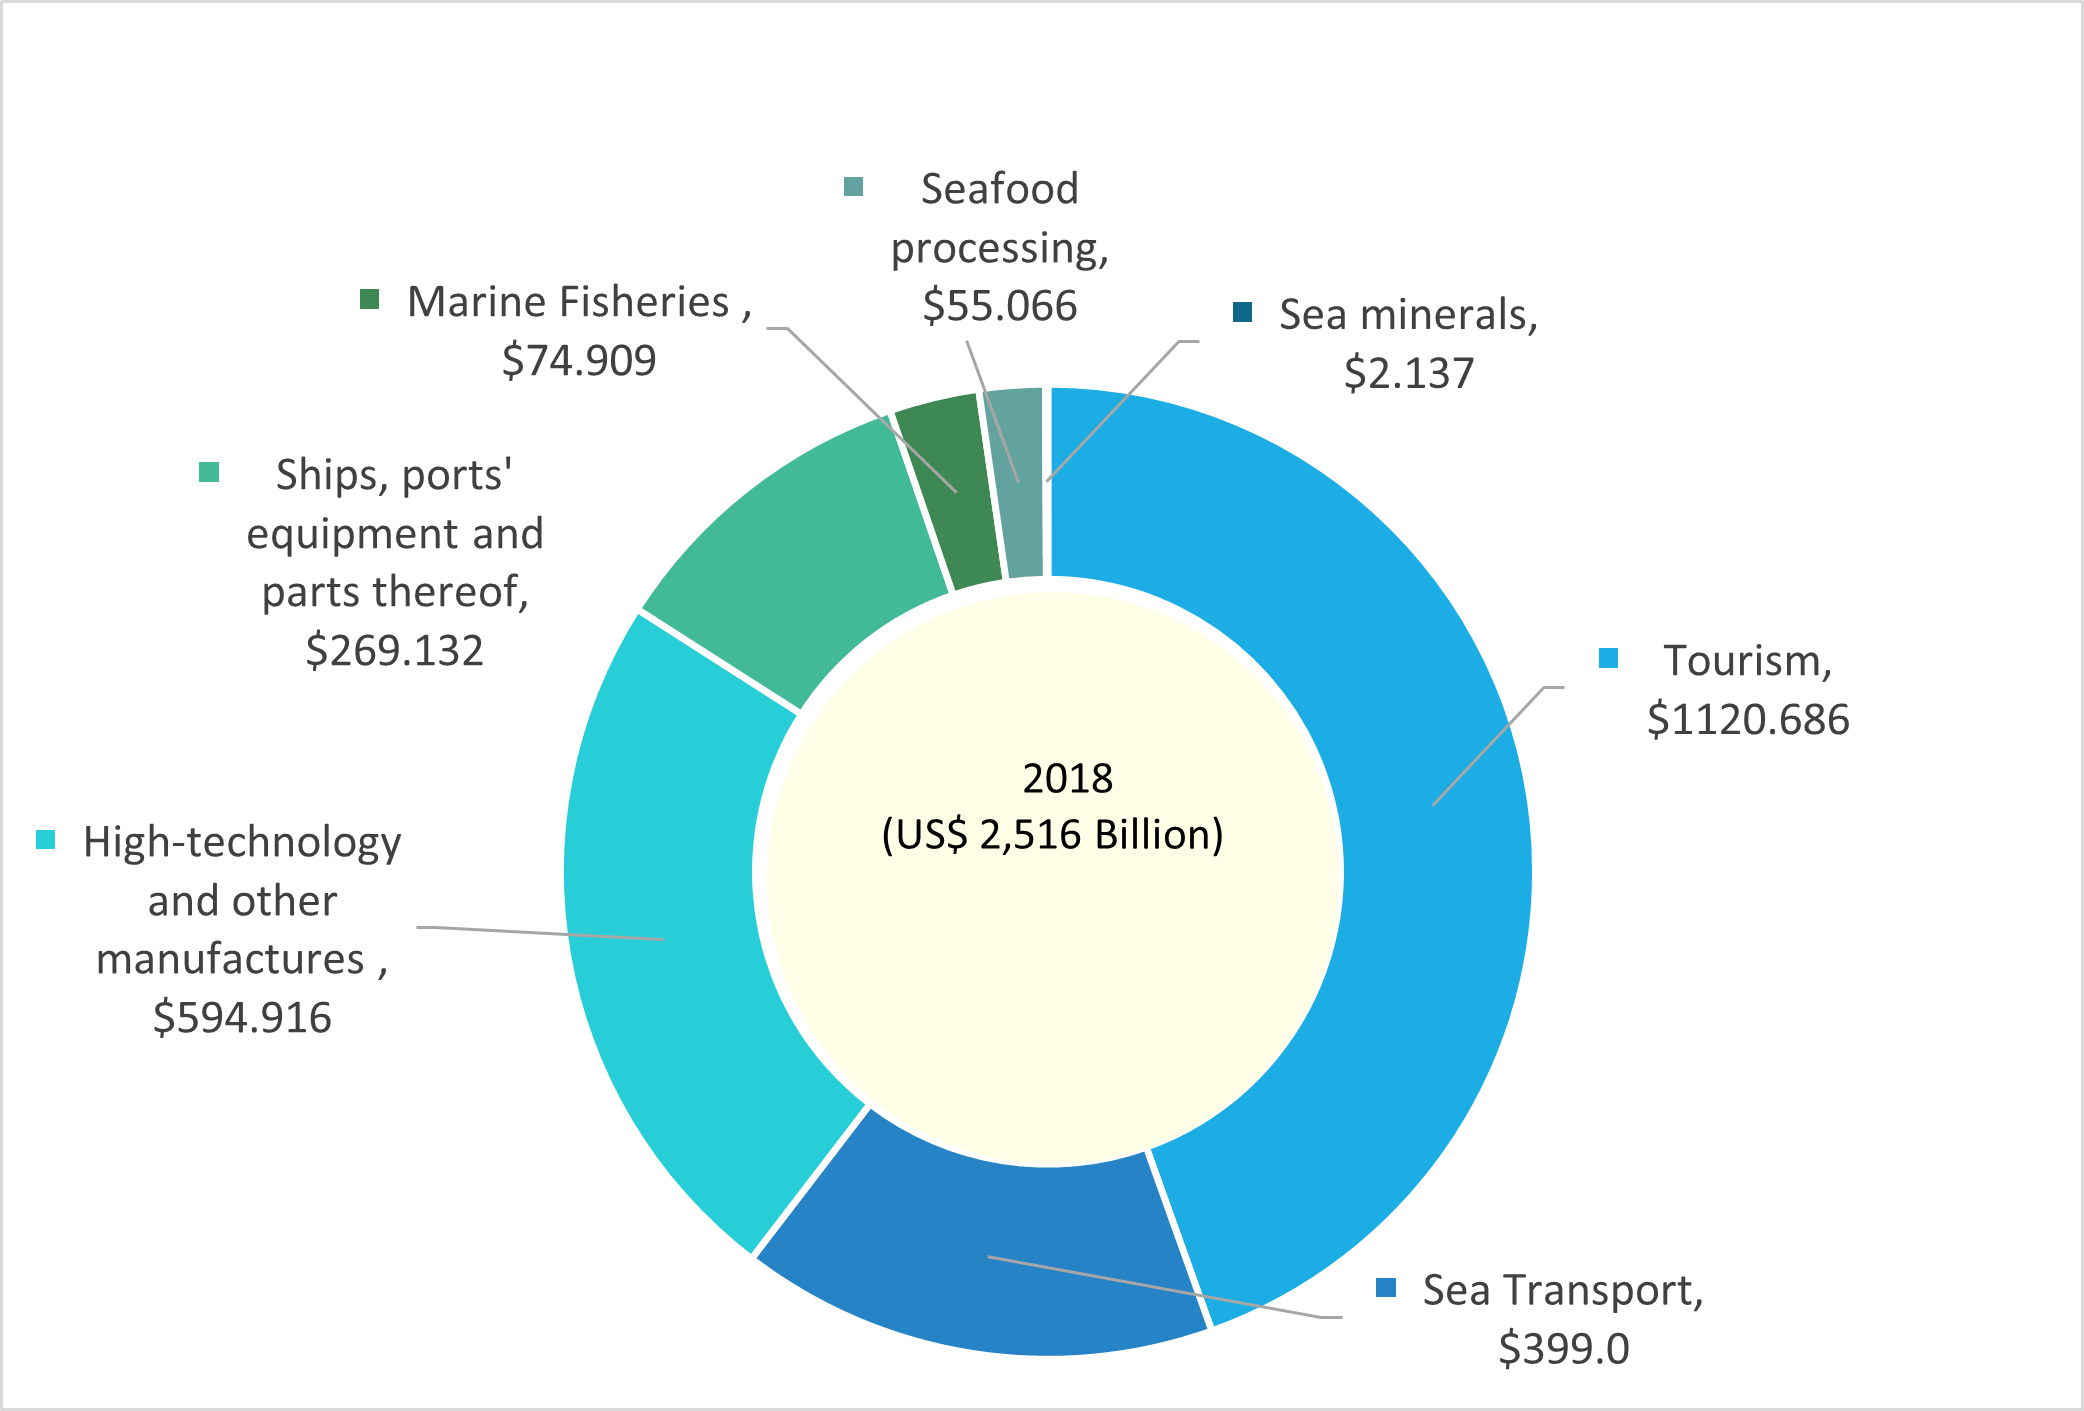 Ocean-based industries